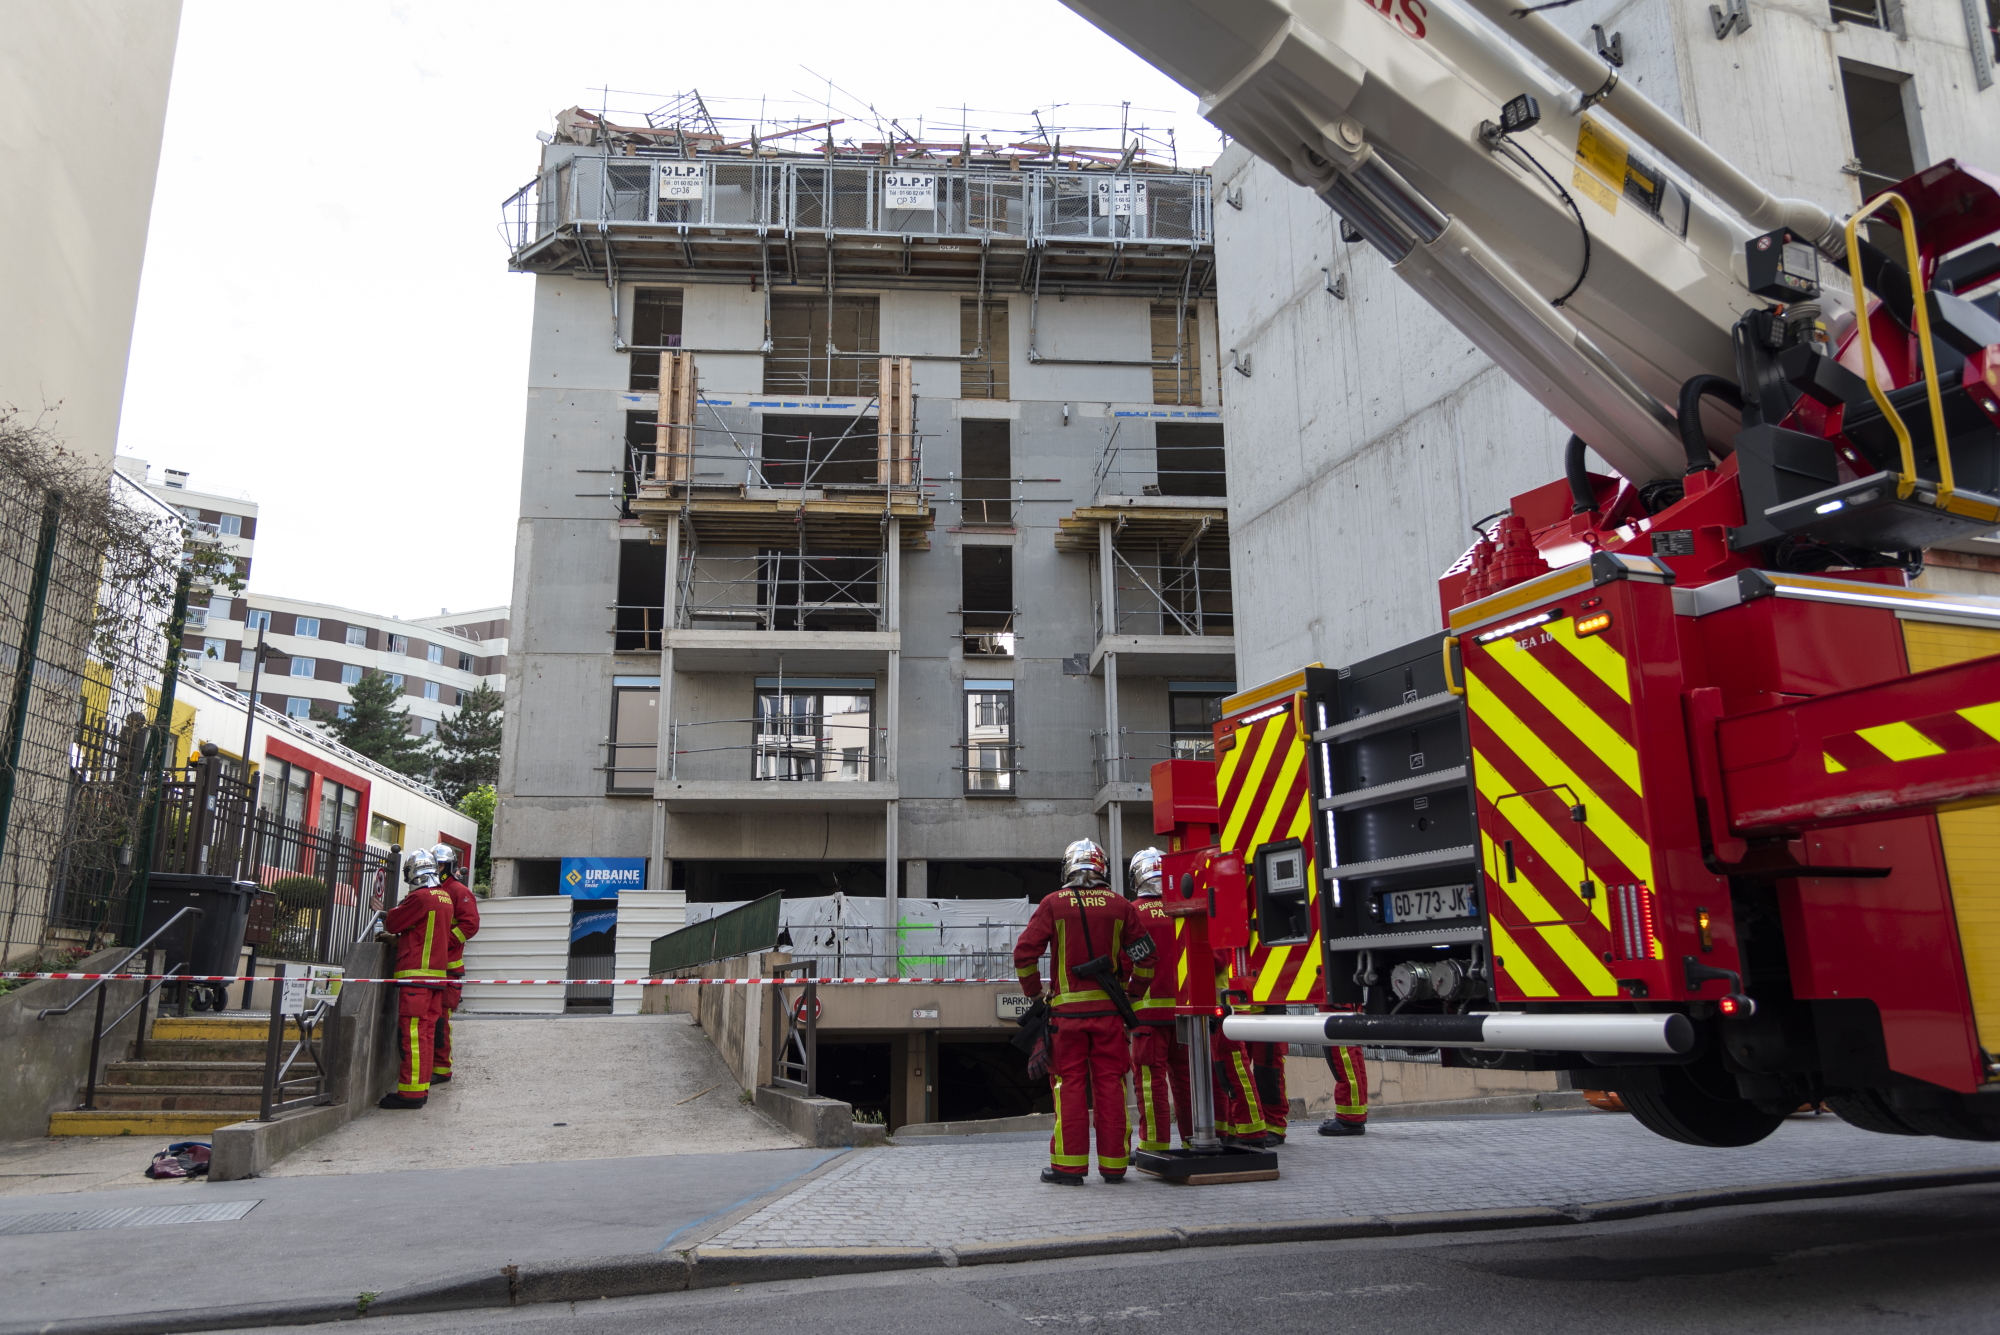 Intervention des pompiers - effondrement sur le chantier rues Defrance/Viénot